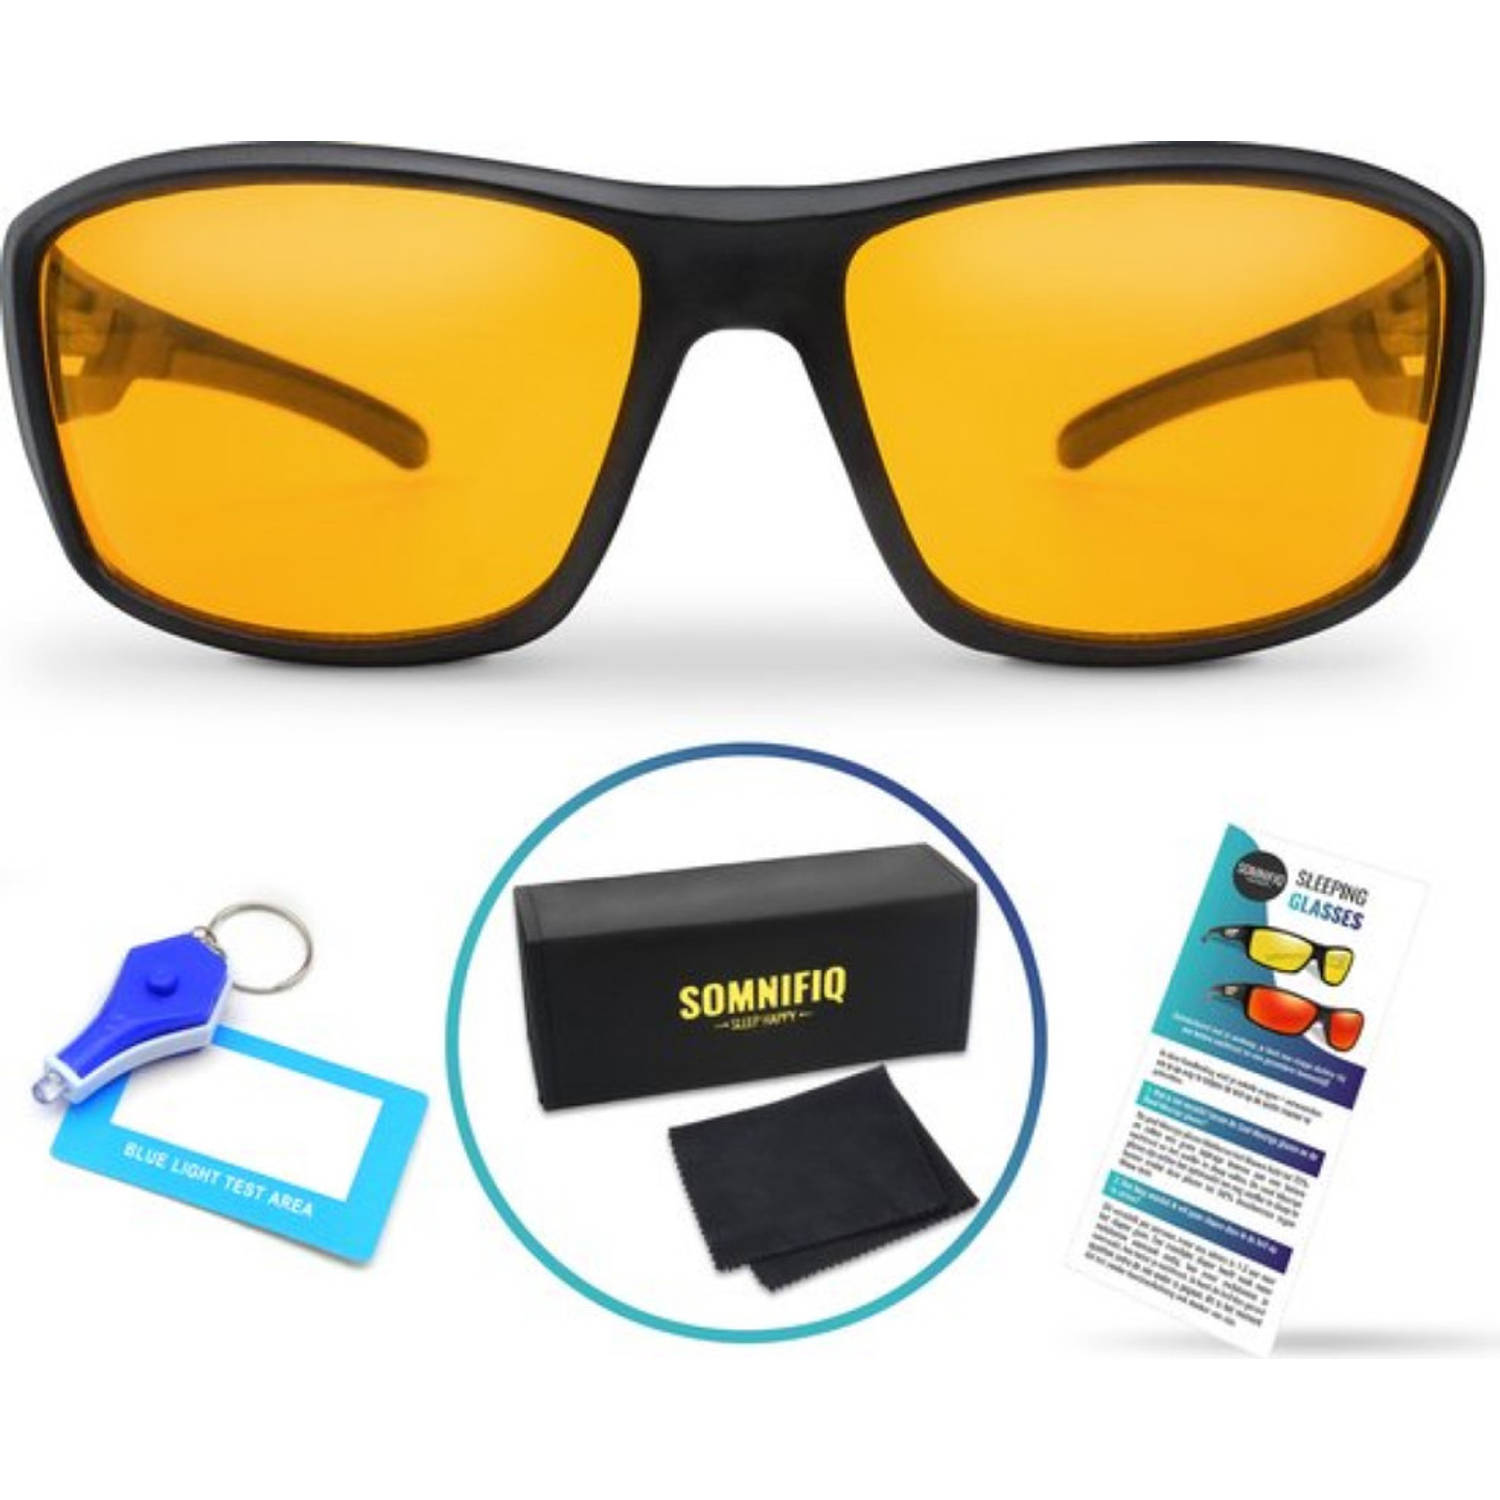 Somnifiq Slaapbril – Blauw Licht Bril – Beeldschermbril - Beter Slapen - Computerbril - Geel Kleurige Lenzen – Voor Overdag of ‘s Avonds – Wraparound Fitting - Licht Gewicht - Blok